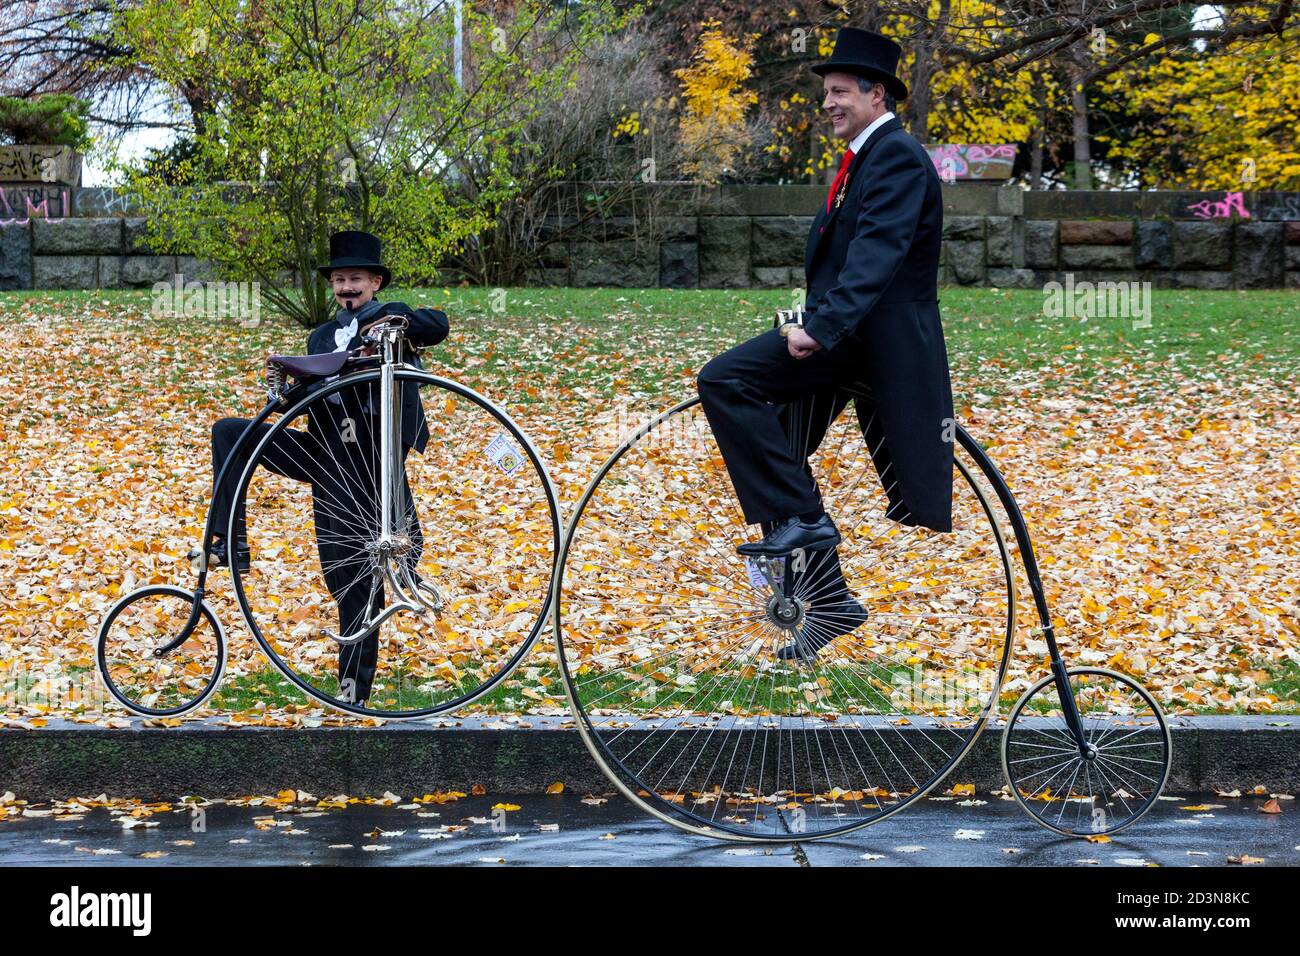 Zwei Radfahrer auf Penny Farthing Fahrräder Kostüme, in Schwanz Mantel Stockfoto